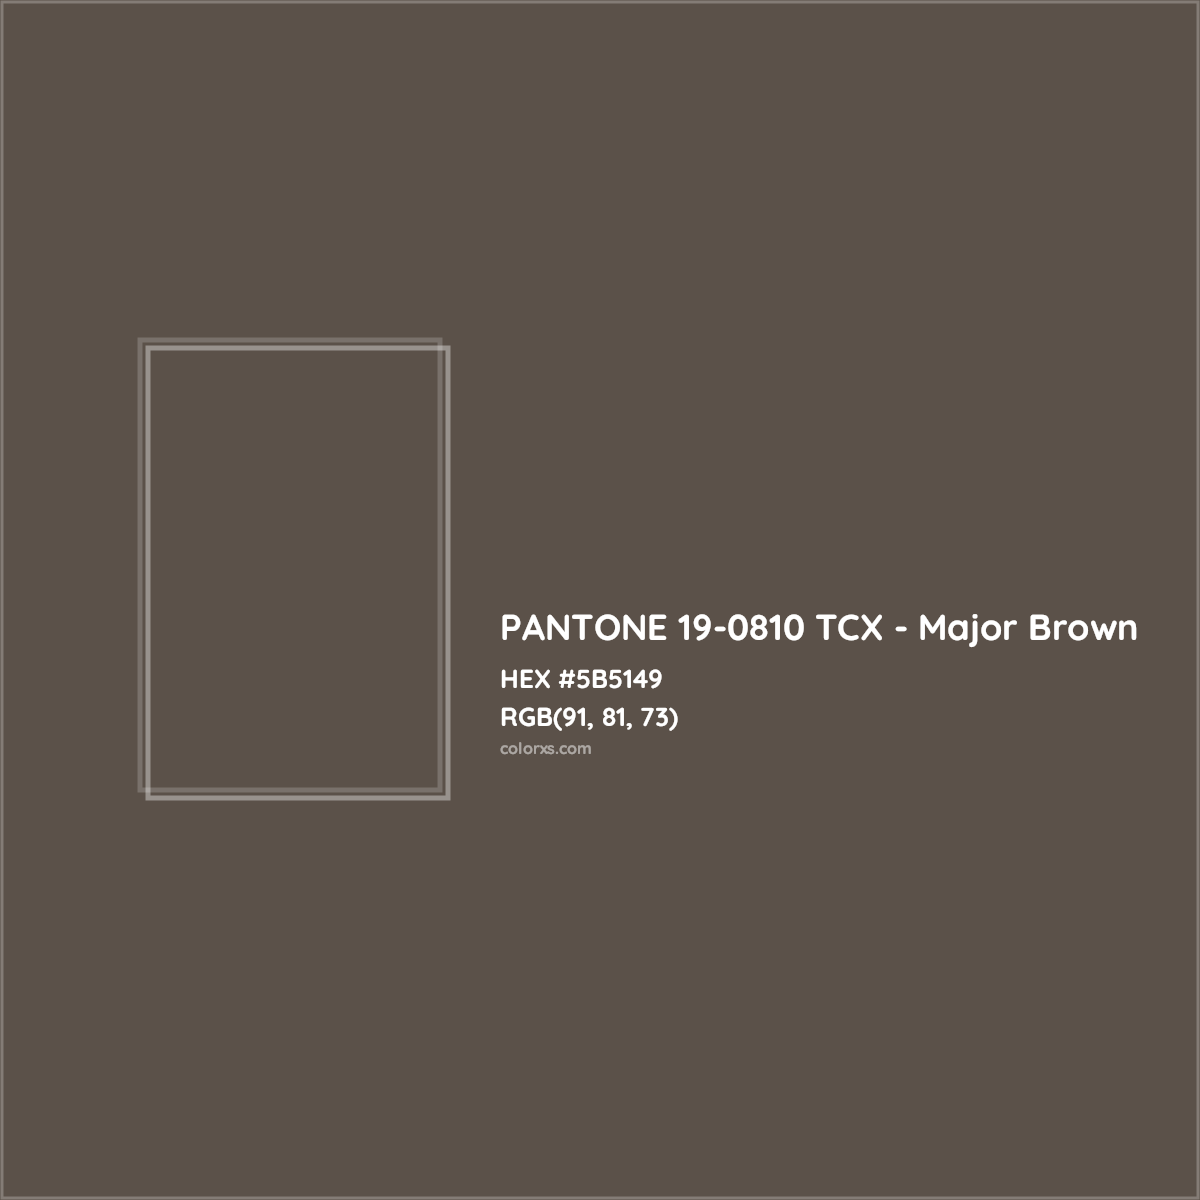 HEX #5B5149 PANTONE 19-0810 TCX - Major Brown CMS Pantone TCX - Color Code